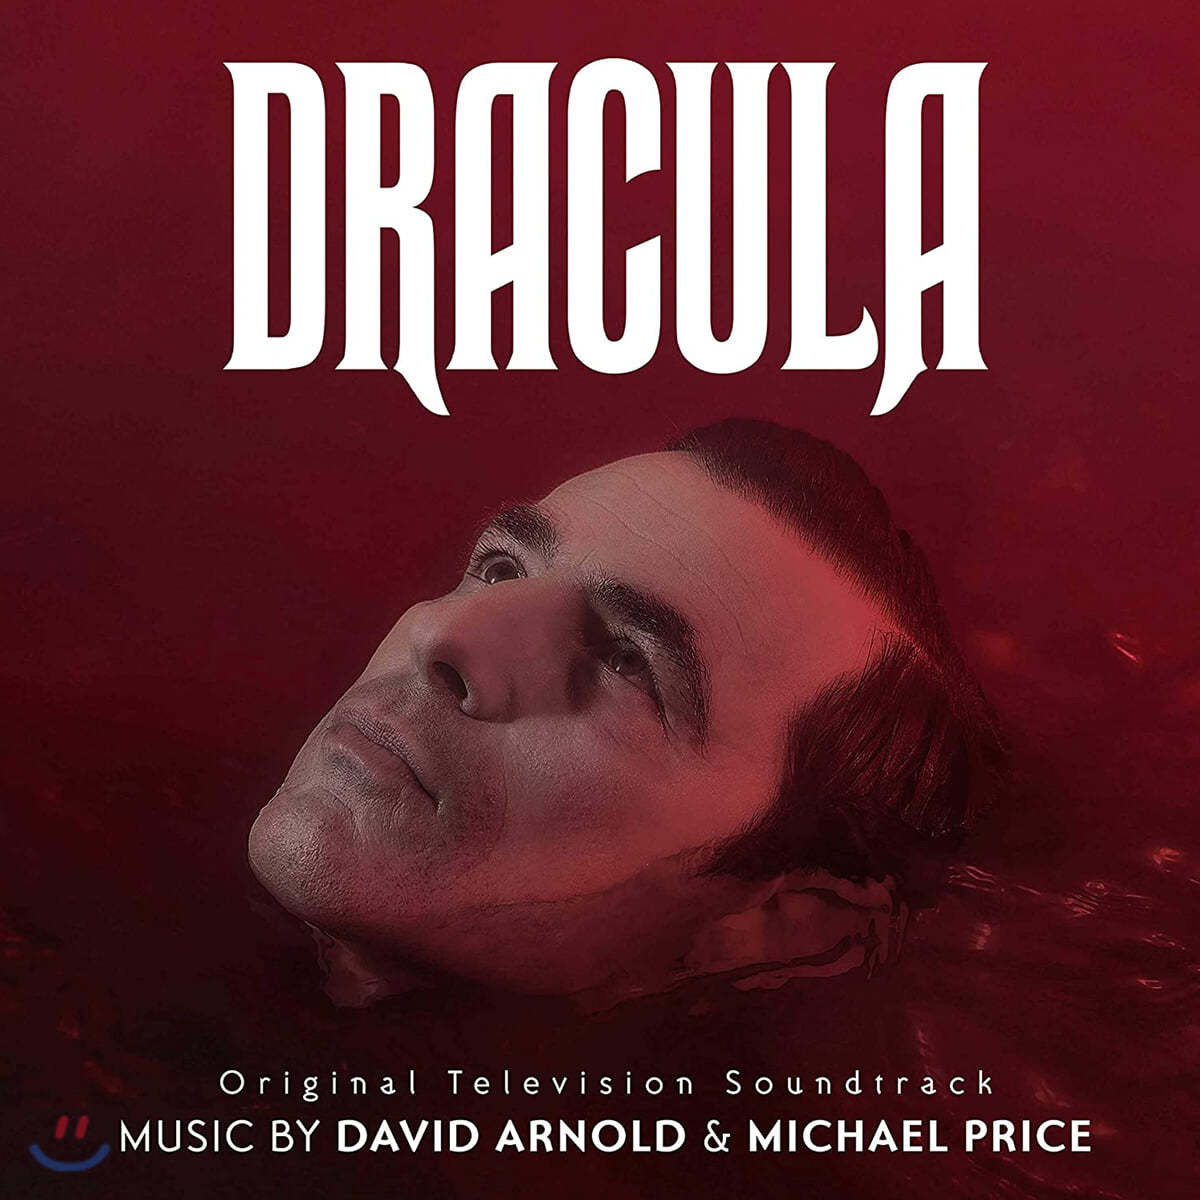 BBC/Netflix '드라큘라' 드라마 음악 (Dracula OST by David Arnold & Michael Price 데이비드 아널드 & 마이클 프라이스) 